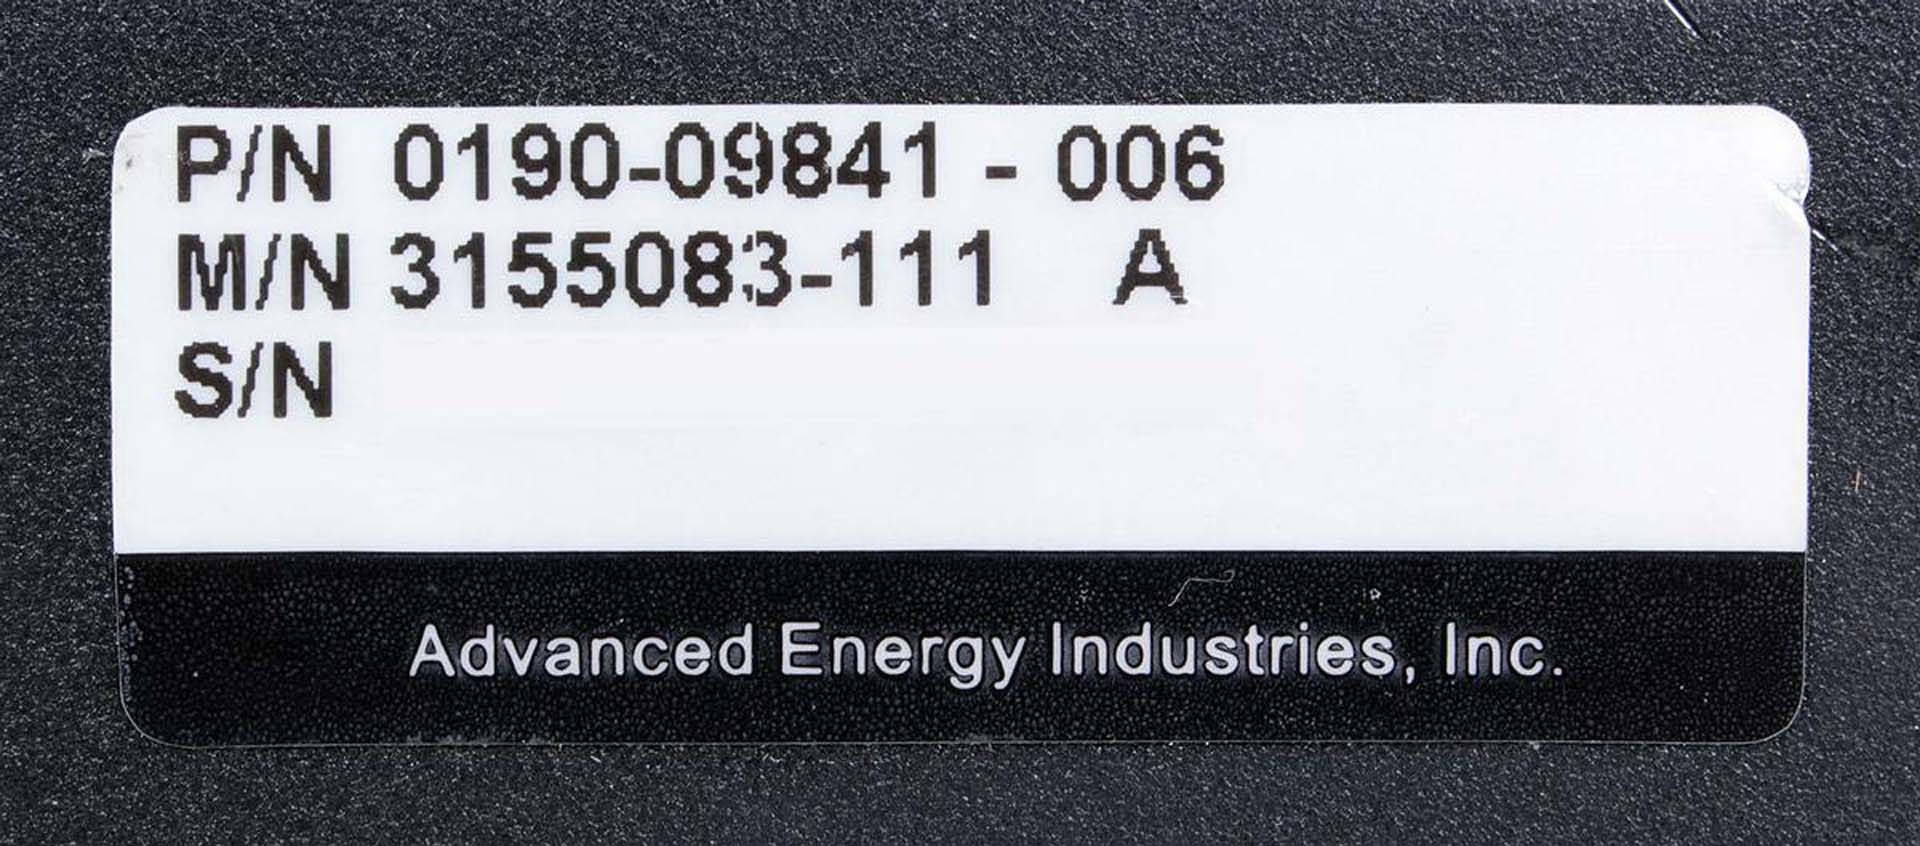 フォト（写真） 使用される ADVANCED ENERGY HFV 8000 販売のために